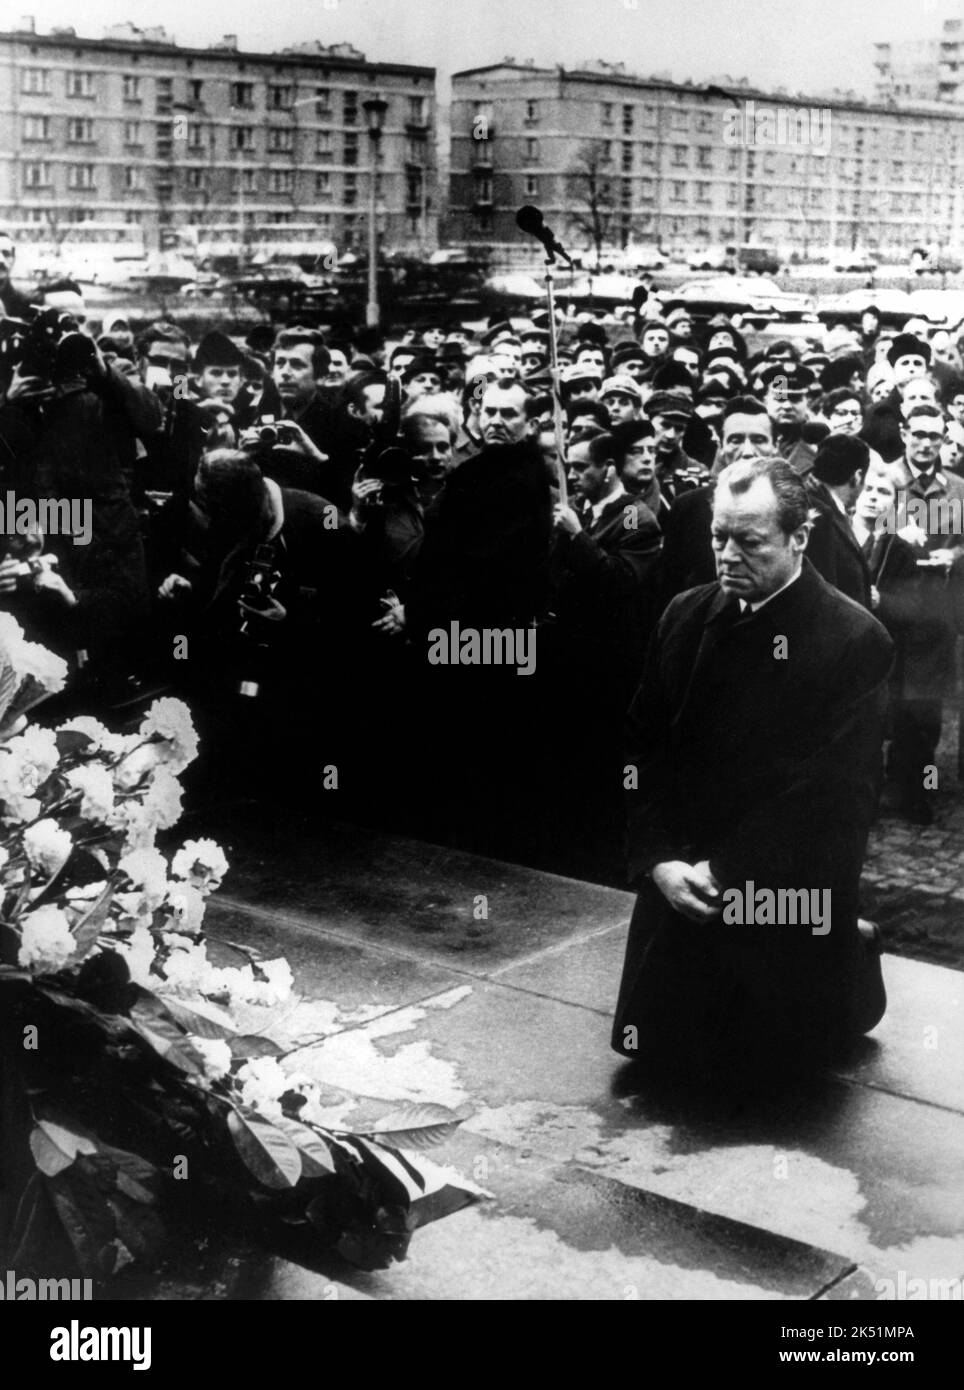 ARCHIV - Bundeskanzler Willy Brandt kniet am 07.12.1970 vor dem Mahnmal im einstigen jüdischen Ghetto in Warschau (Polen), das den Helden des Ghetto-Aufstandes vom April 1943 gewidmet ist. Foto: dpa (zu dpa-Themenpaket «100 Jahre Willy Brandt» vom 16.12.2013) ++ Stock Photo